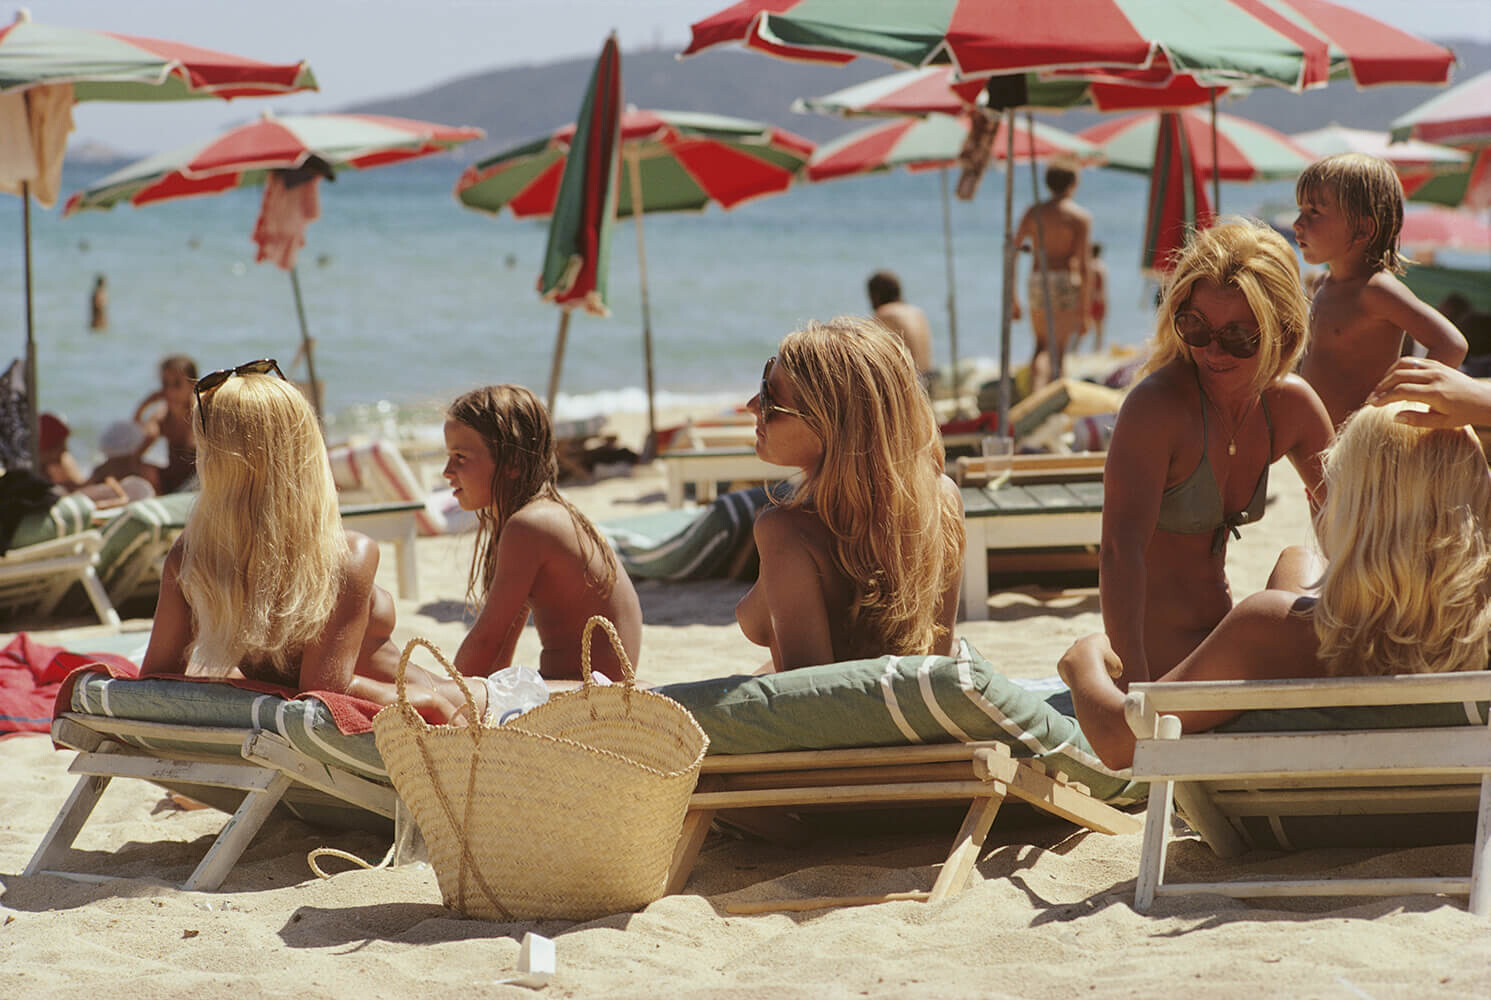 Пляж в Сен-Тропе, Лазурный берег, Франция, 1971. Фотограф Слим Ааронс